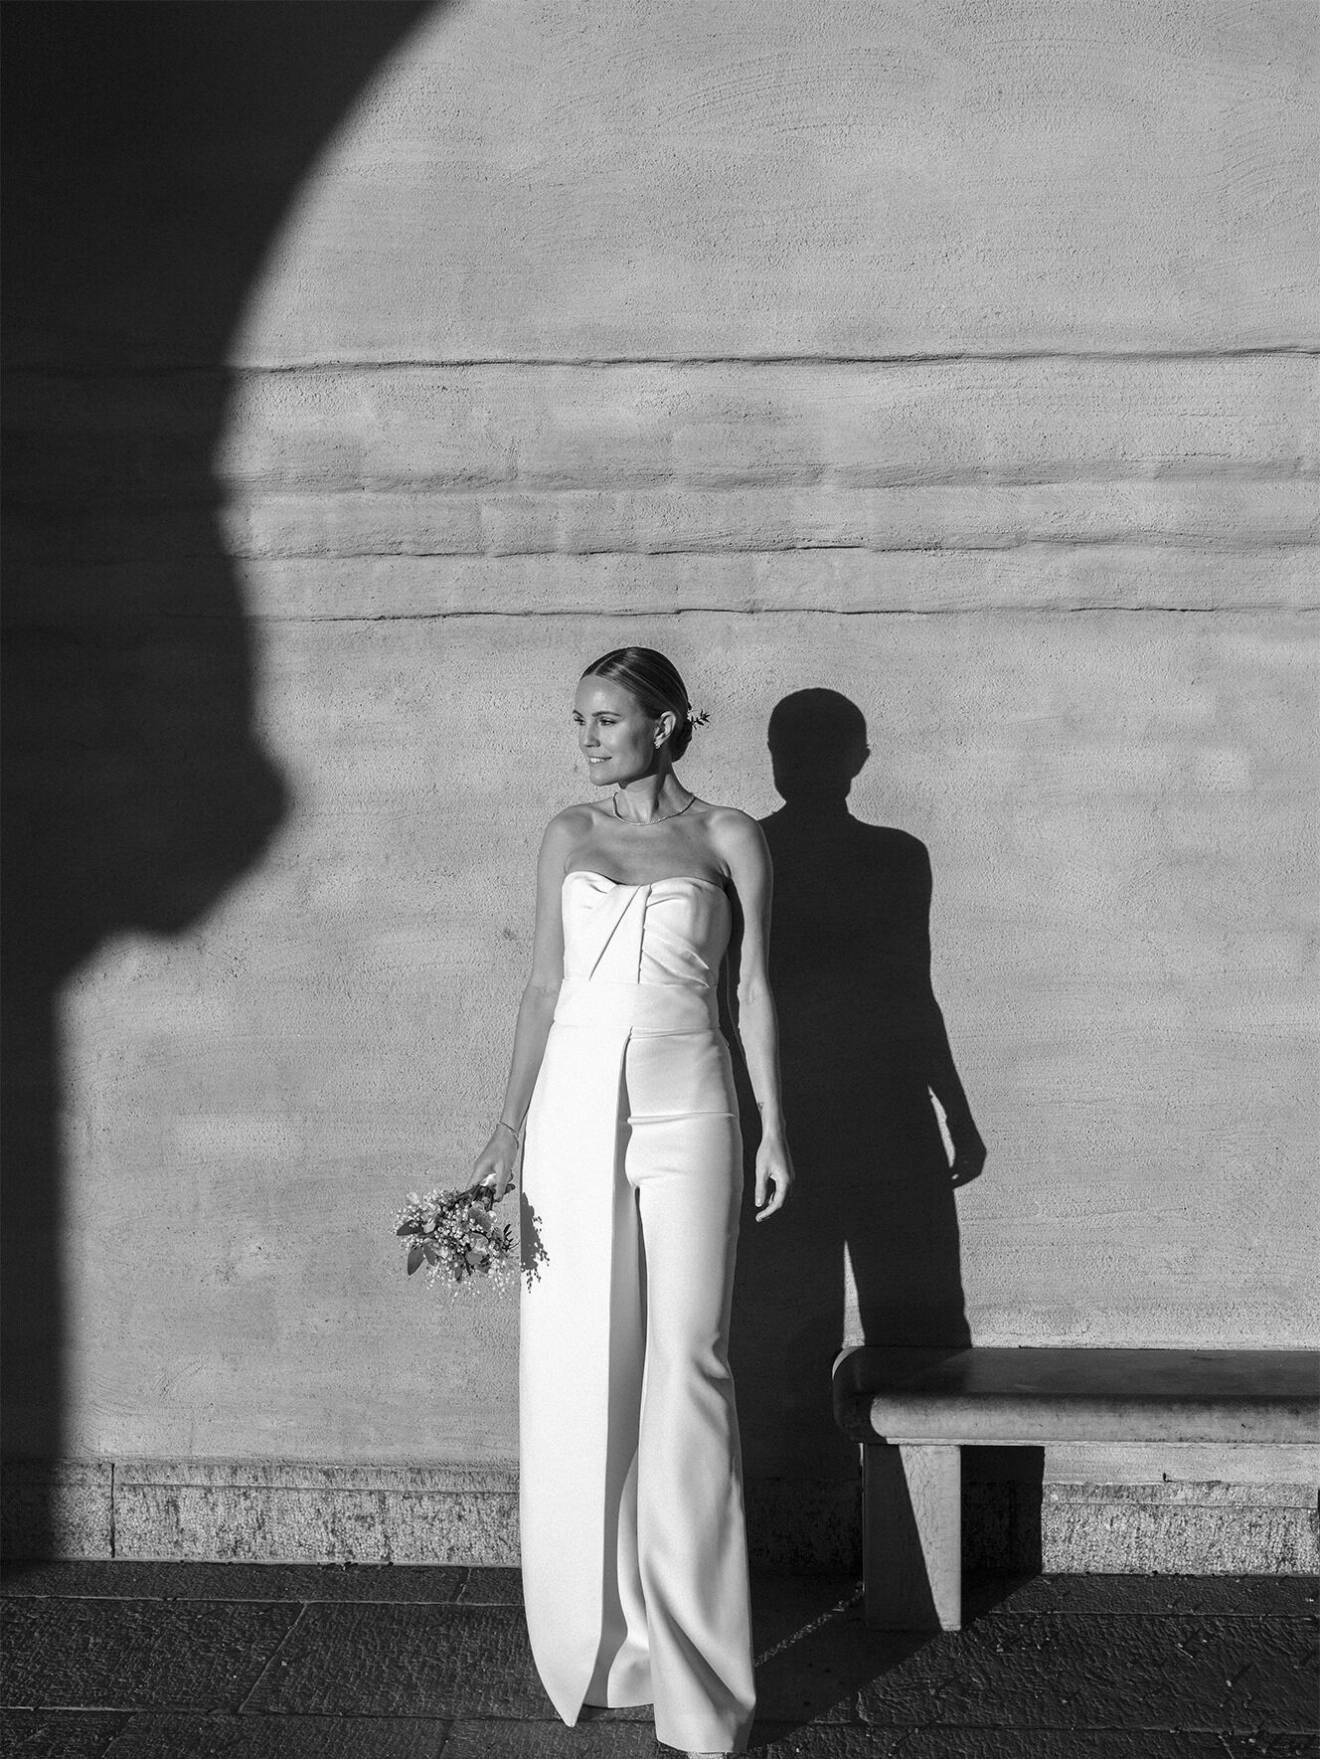 Sofi Fahrman gifte sig en vacker vit byxdress från Safiyaa